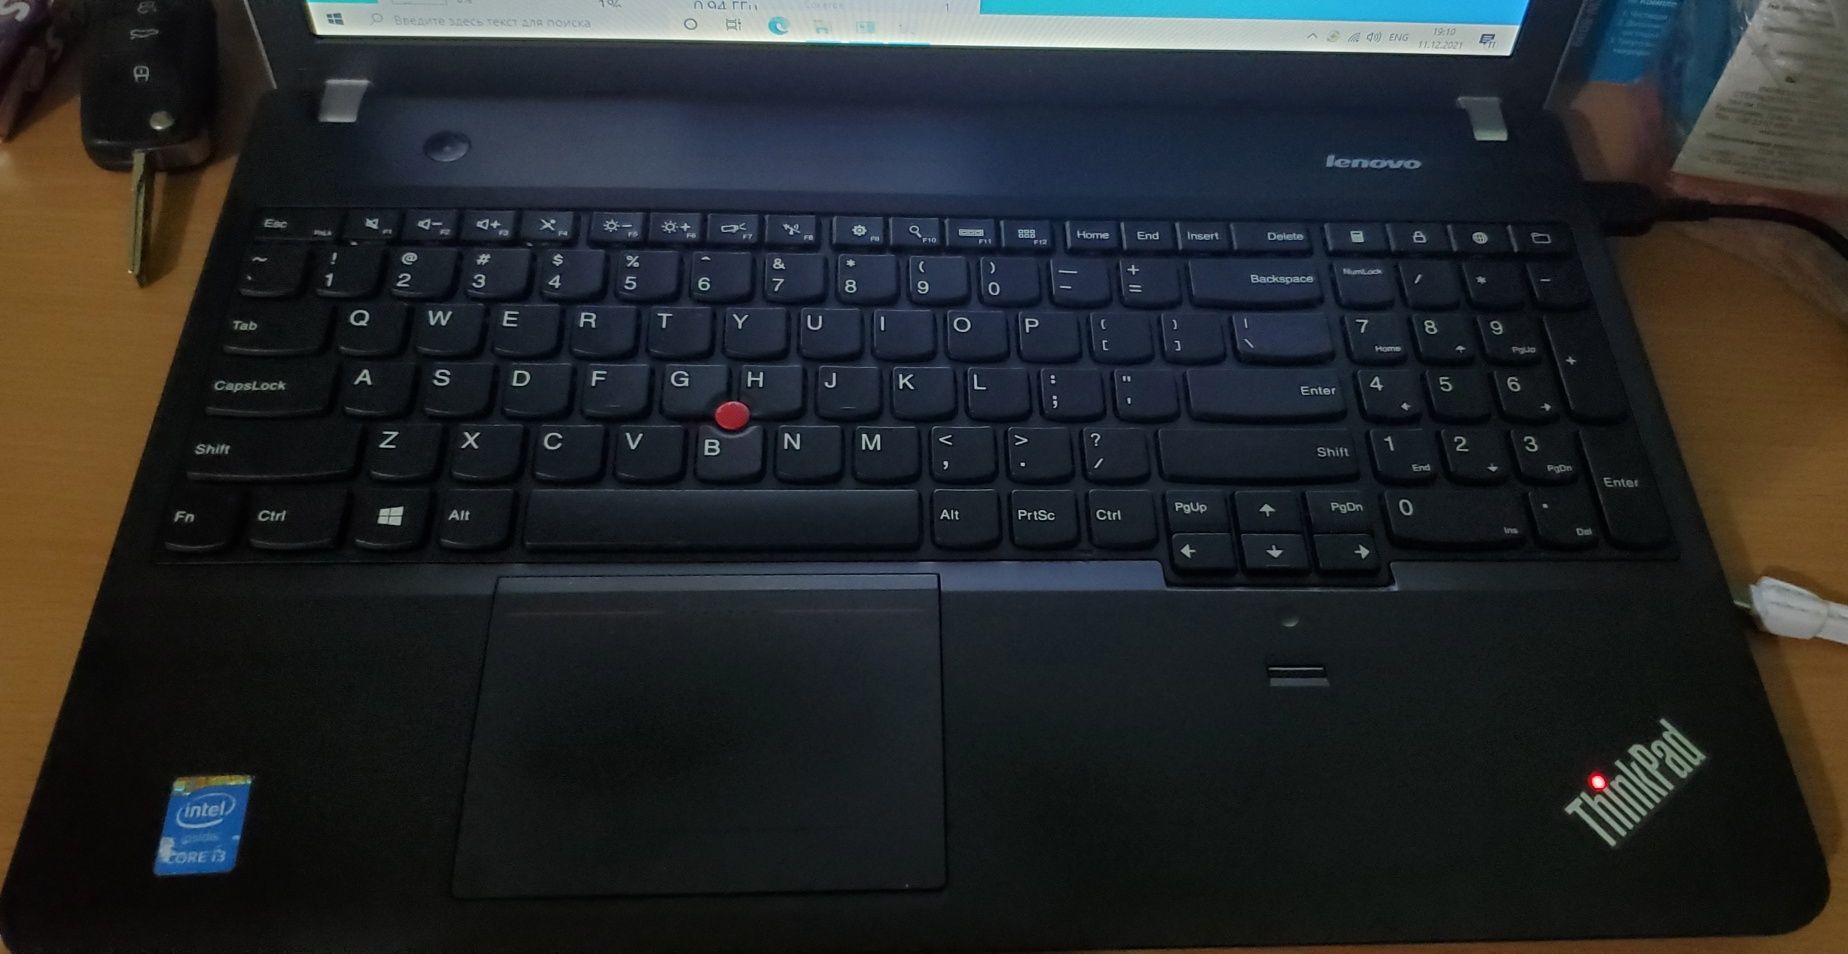 Lenovo ThinkPad edge E540 i3 4000M 2.3 ггц/RAM 8 ГБ/SSD 128 ГБ/ 15.6